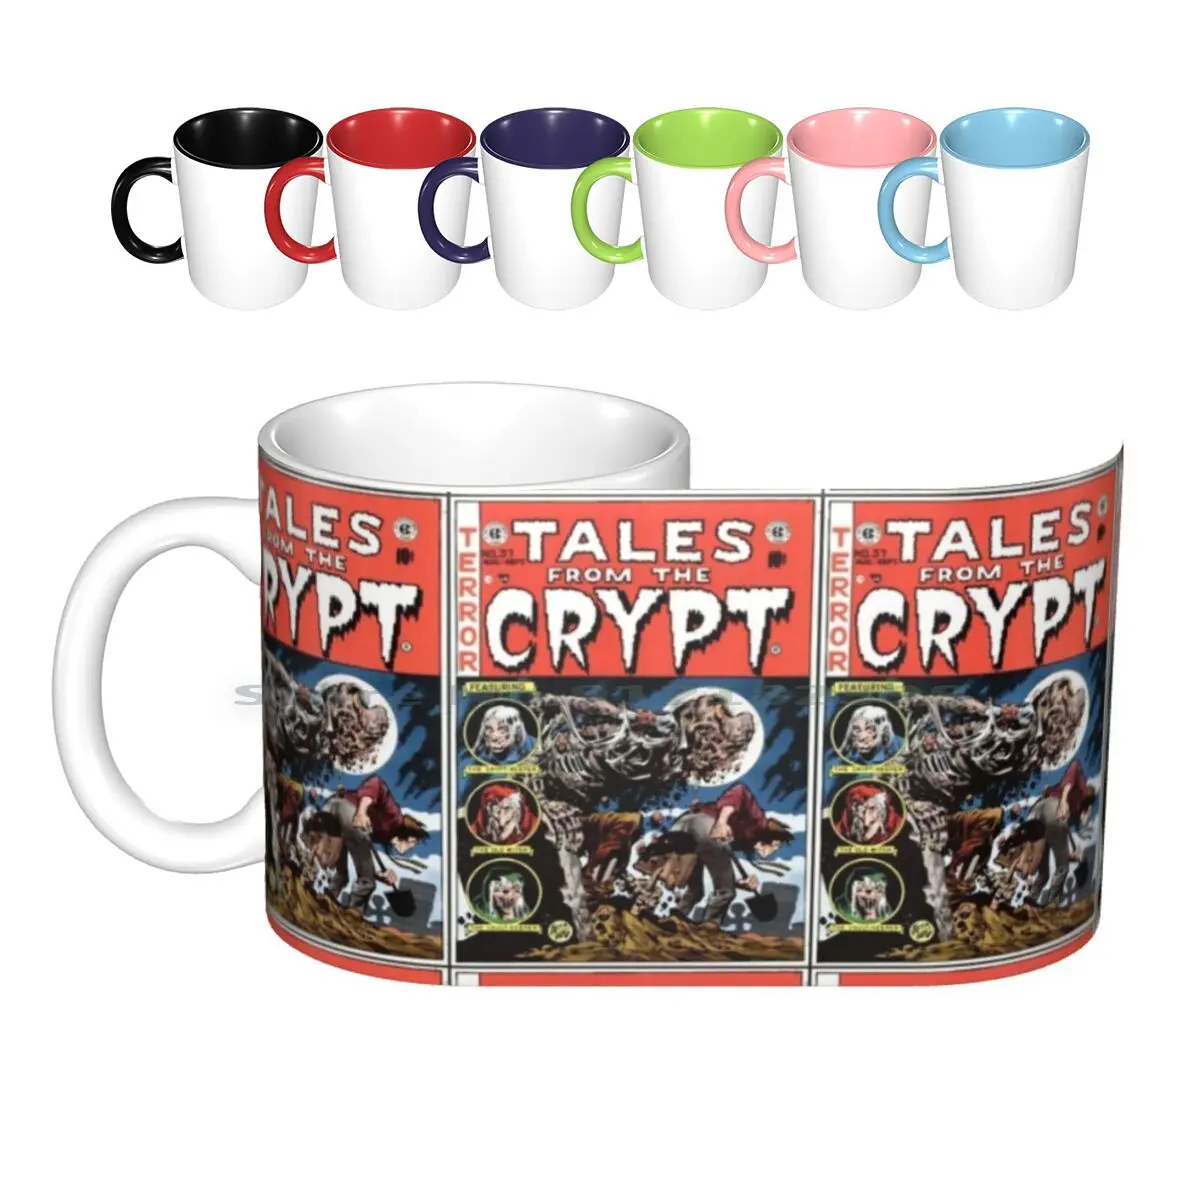 Керамические кружки Tales From The Crypt, кофейные чашки, Кружка для молока и чая, кружка с ужасными сказками, комиксом в стиле ужасов и комиксов 80-х, с критом, Гулем, призраками